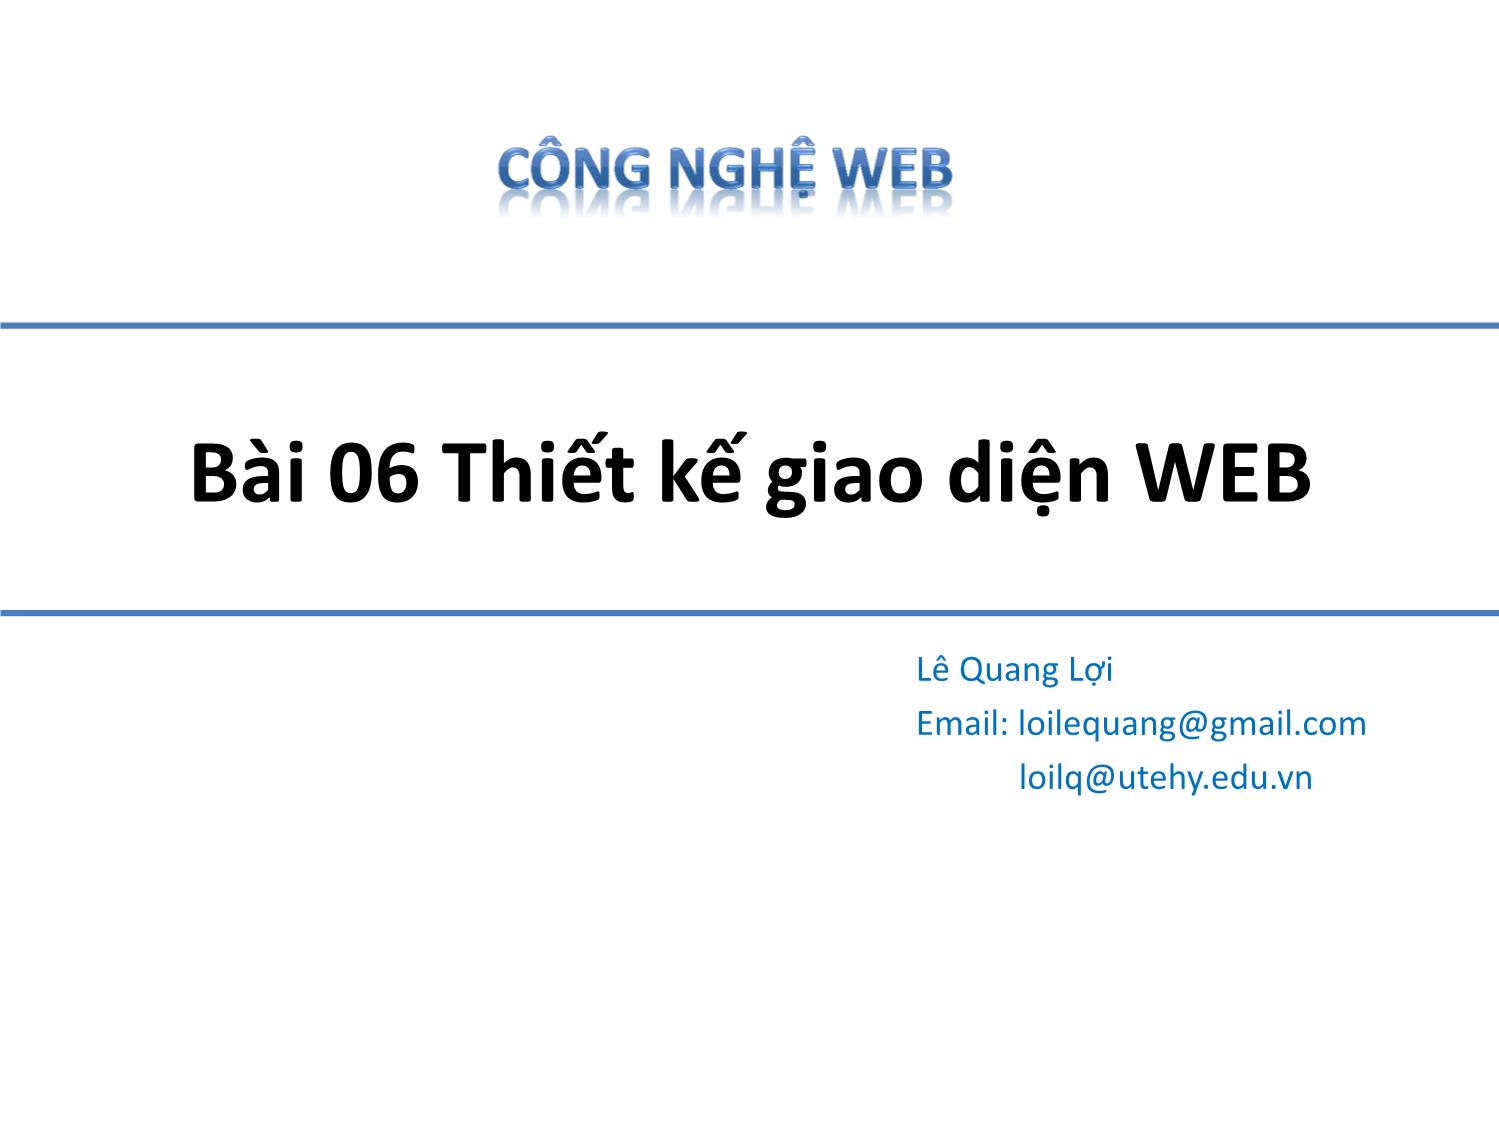 Bài giảng Công nghệ Web - Bài 6: Thiết kế giao diện Web - Lê Quang Lợi trang 1